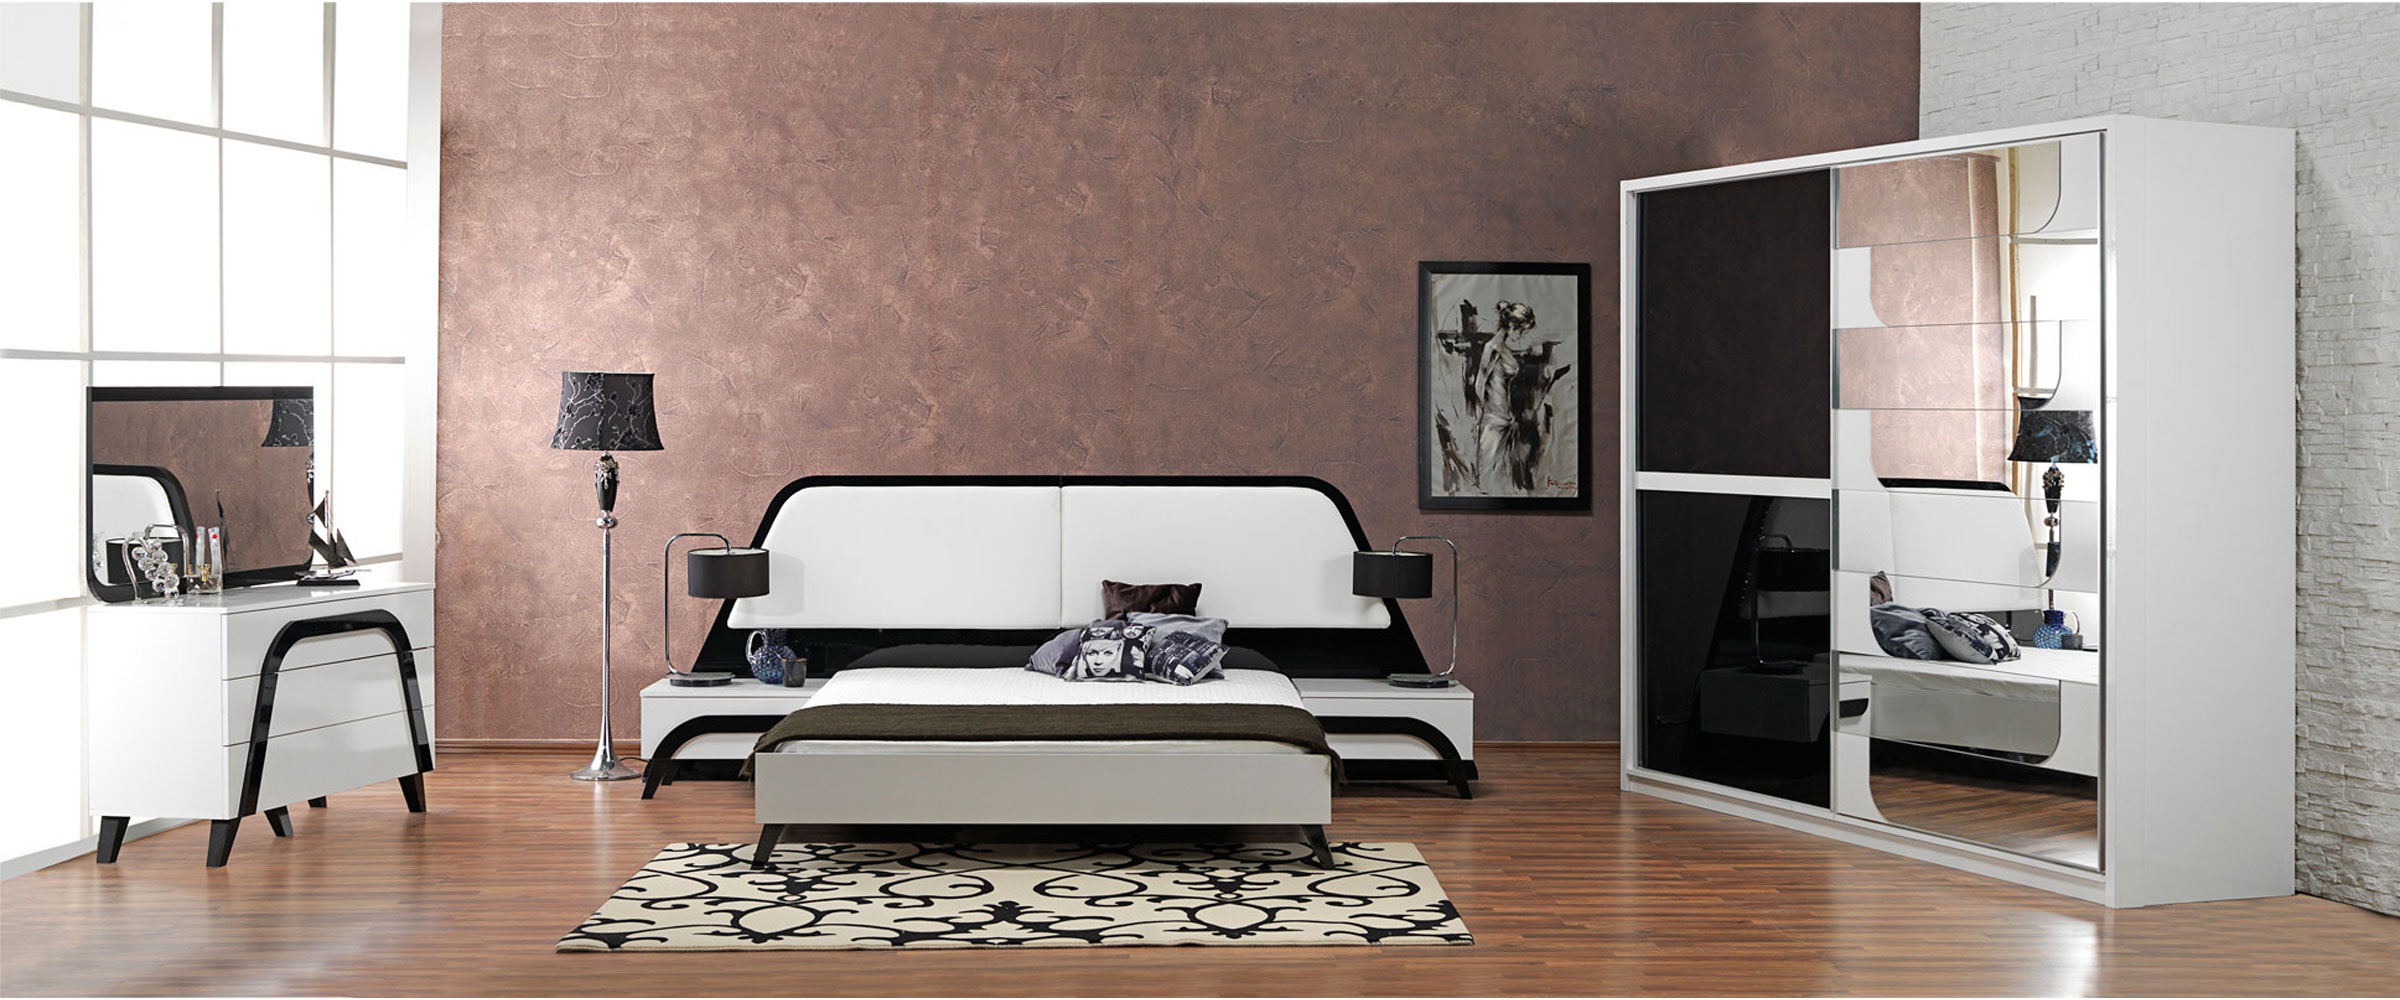 Siyah-beyaz-yatak-odası-konfor-mobilya-örnekleri1.jpg